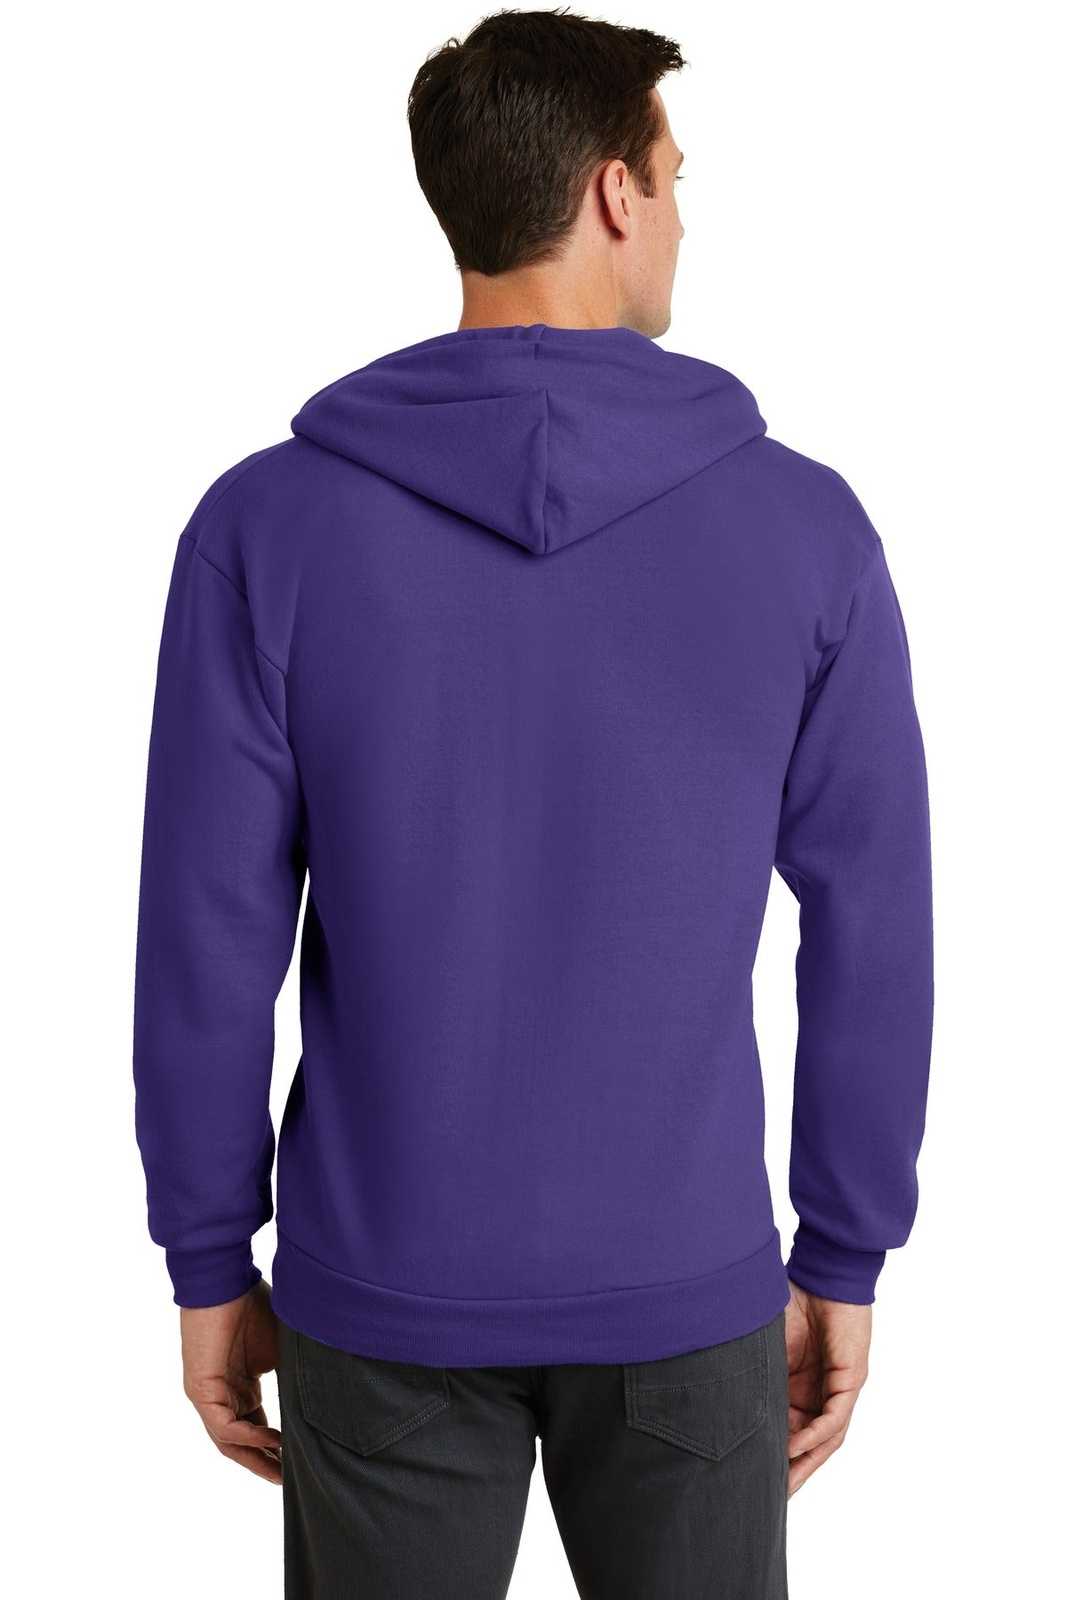 Port & Company PC78ZH Core Fleece Full-Zip Hooded Sweatshirt - Purple - HIT a Double - 1